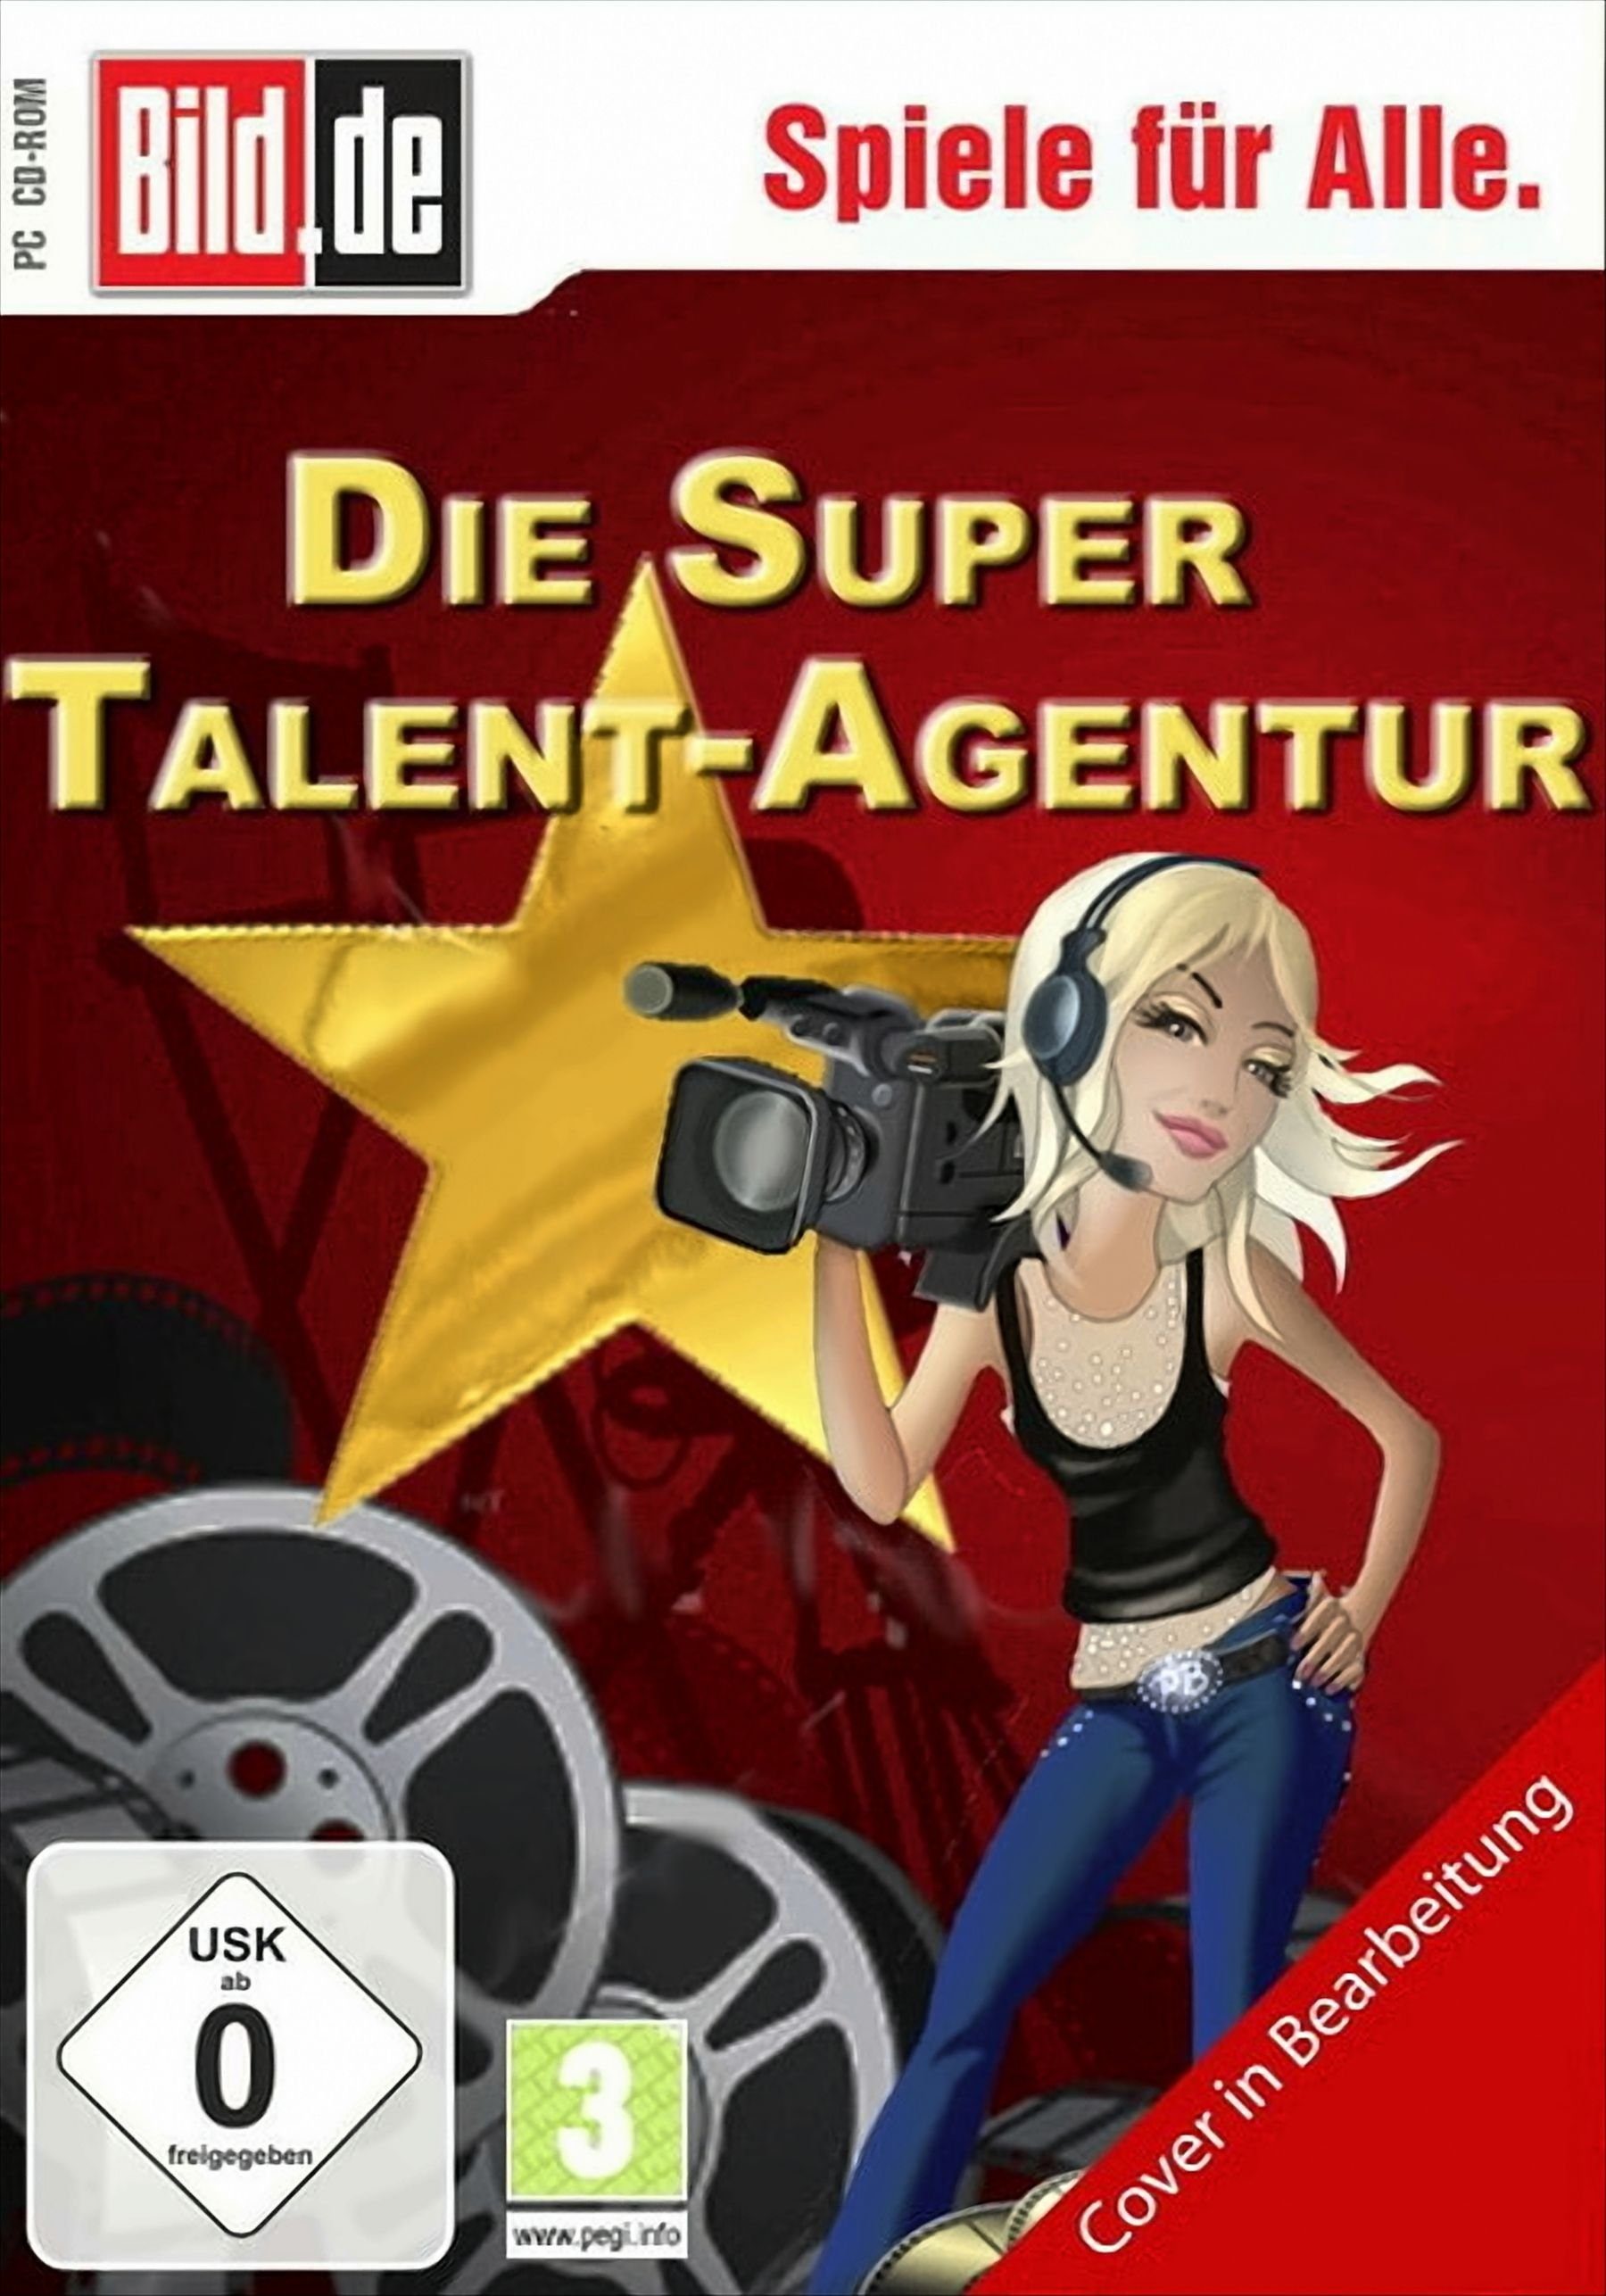 Die super Talent-Agentur PC